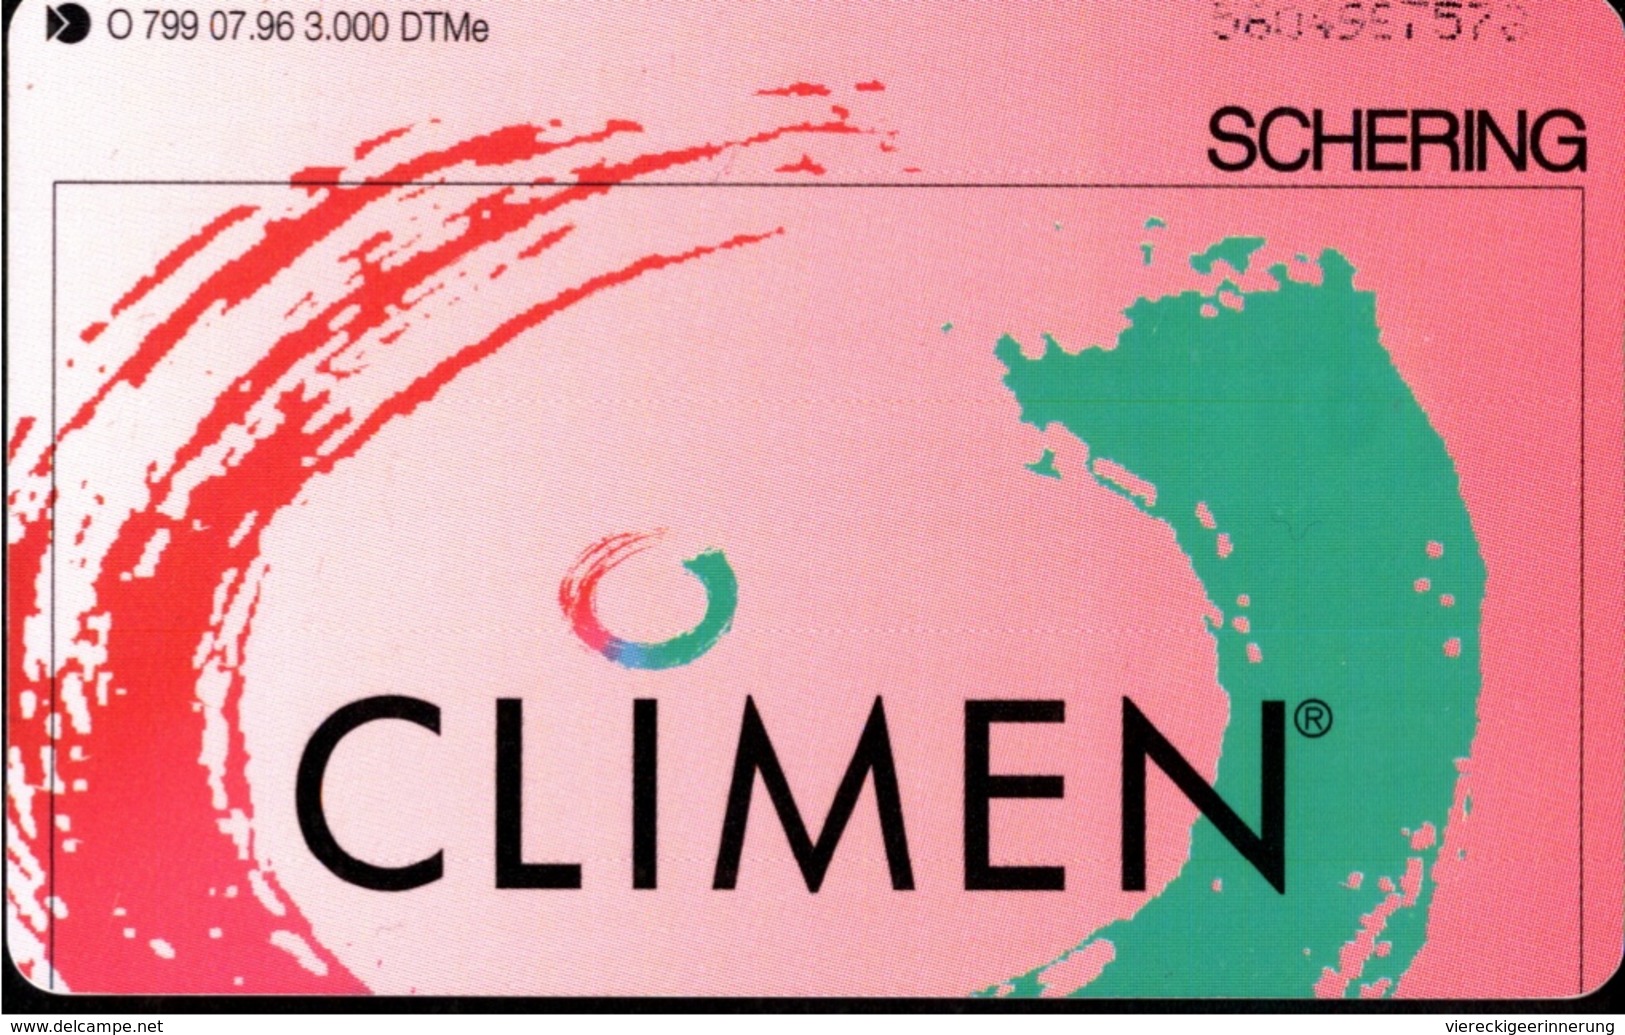 ! Telefonkarte, Telecarte, Phonecard, 1996, O799, Auflage 3000, Schering, Climen, Germany - O-Series: Kundenserie Vom Sammlerservice Ausgeschlossen